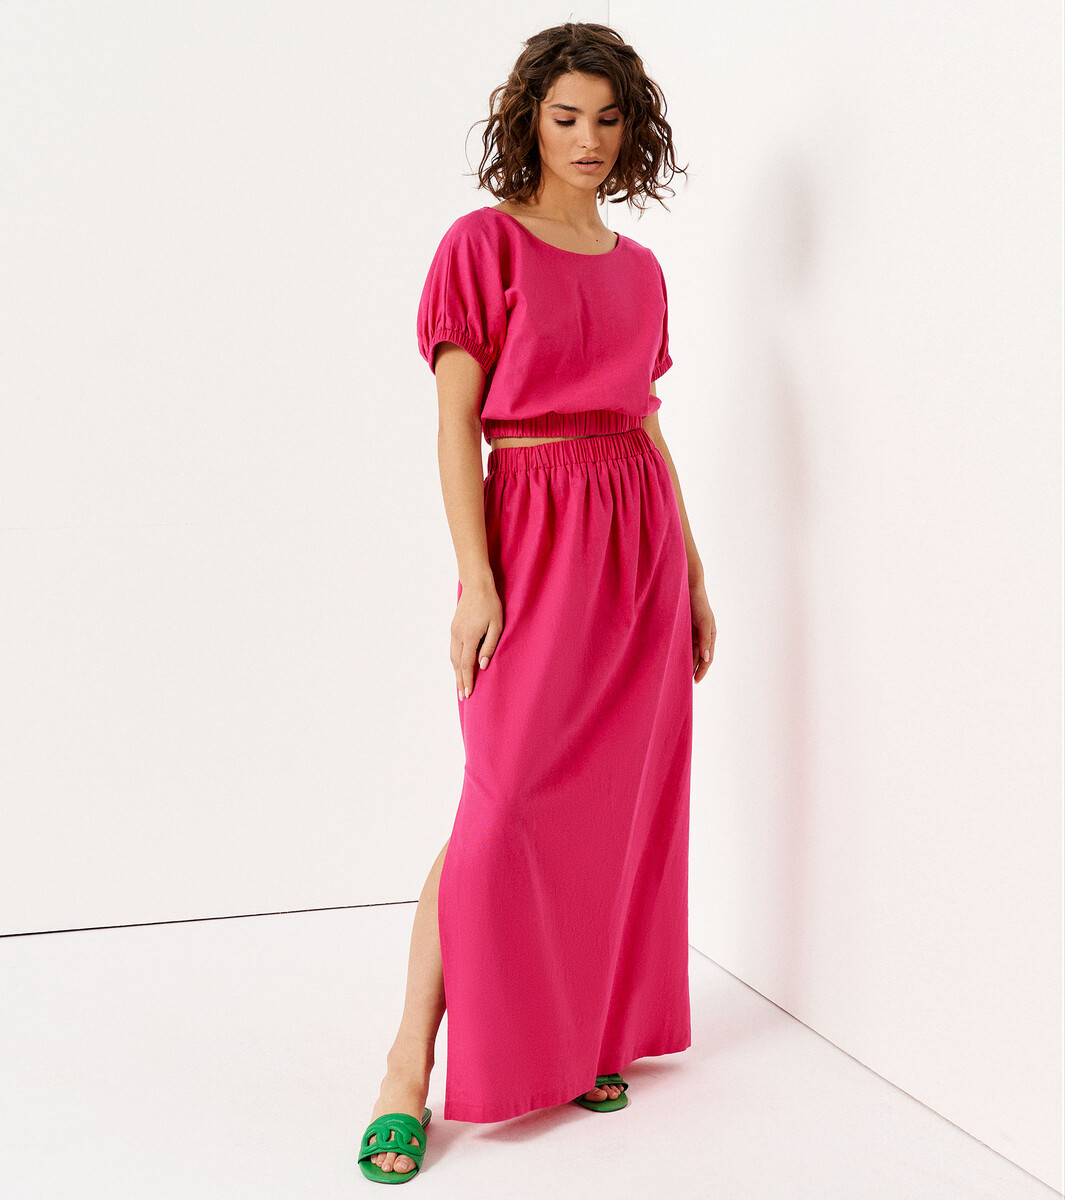 Комплект женский (блузка, юбка) Panda, размер 42, цвет розовый 02398540 - фото 1